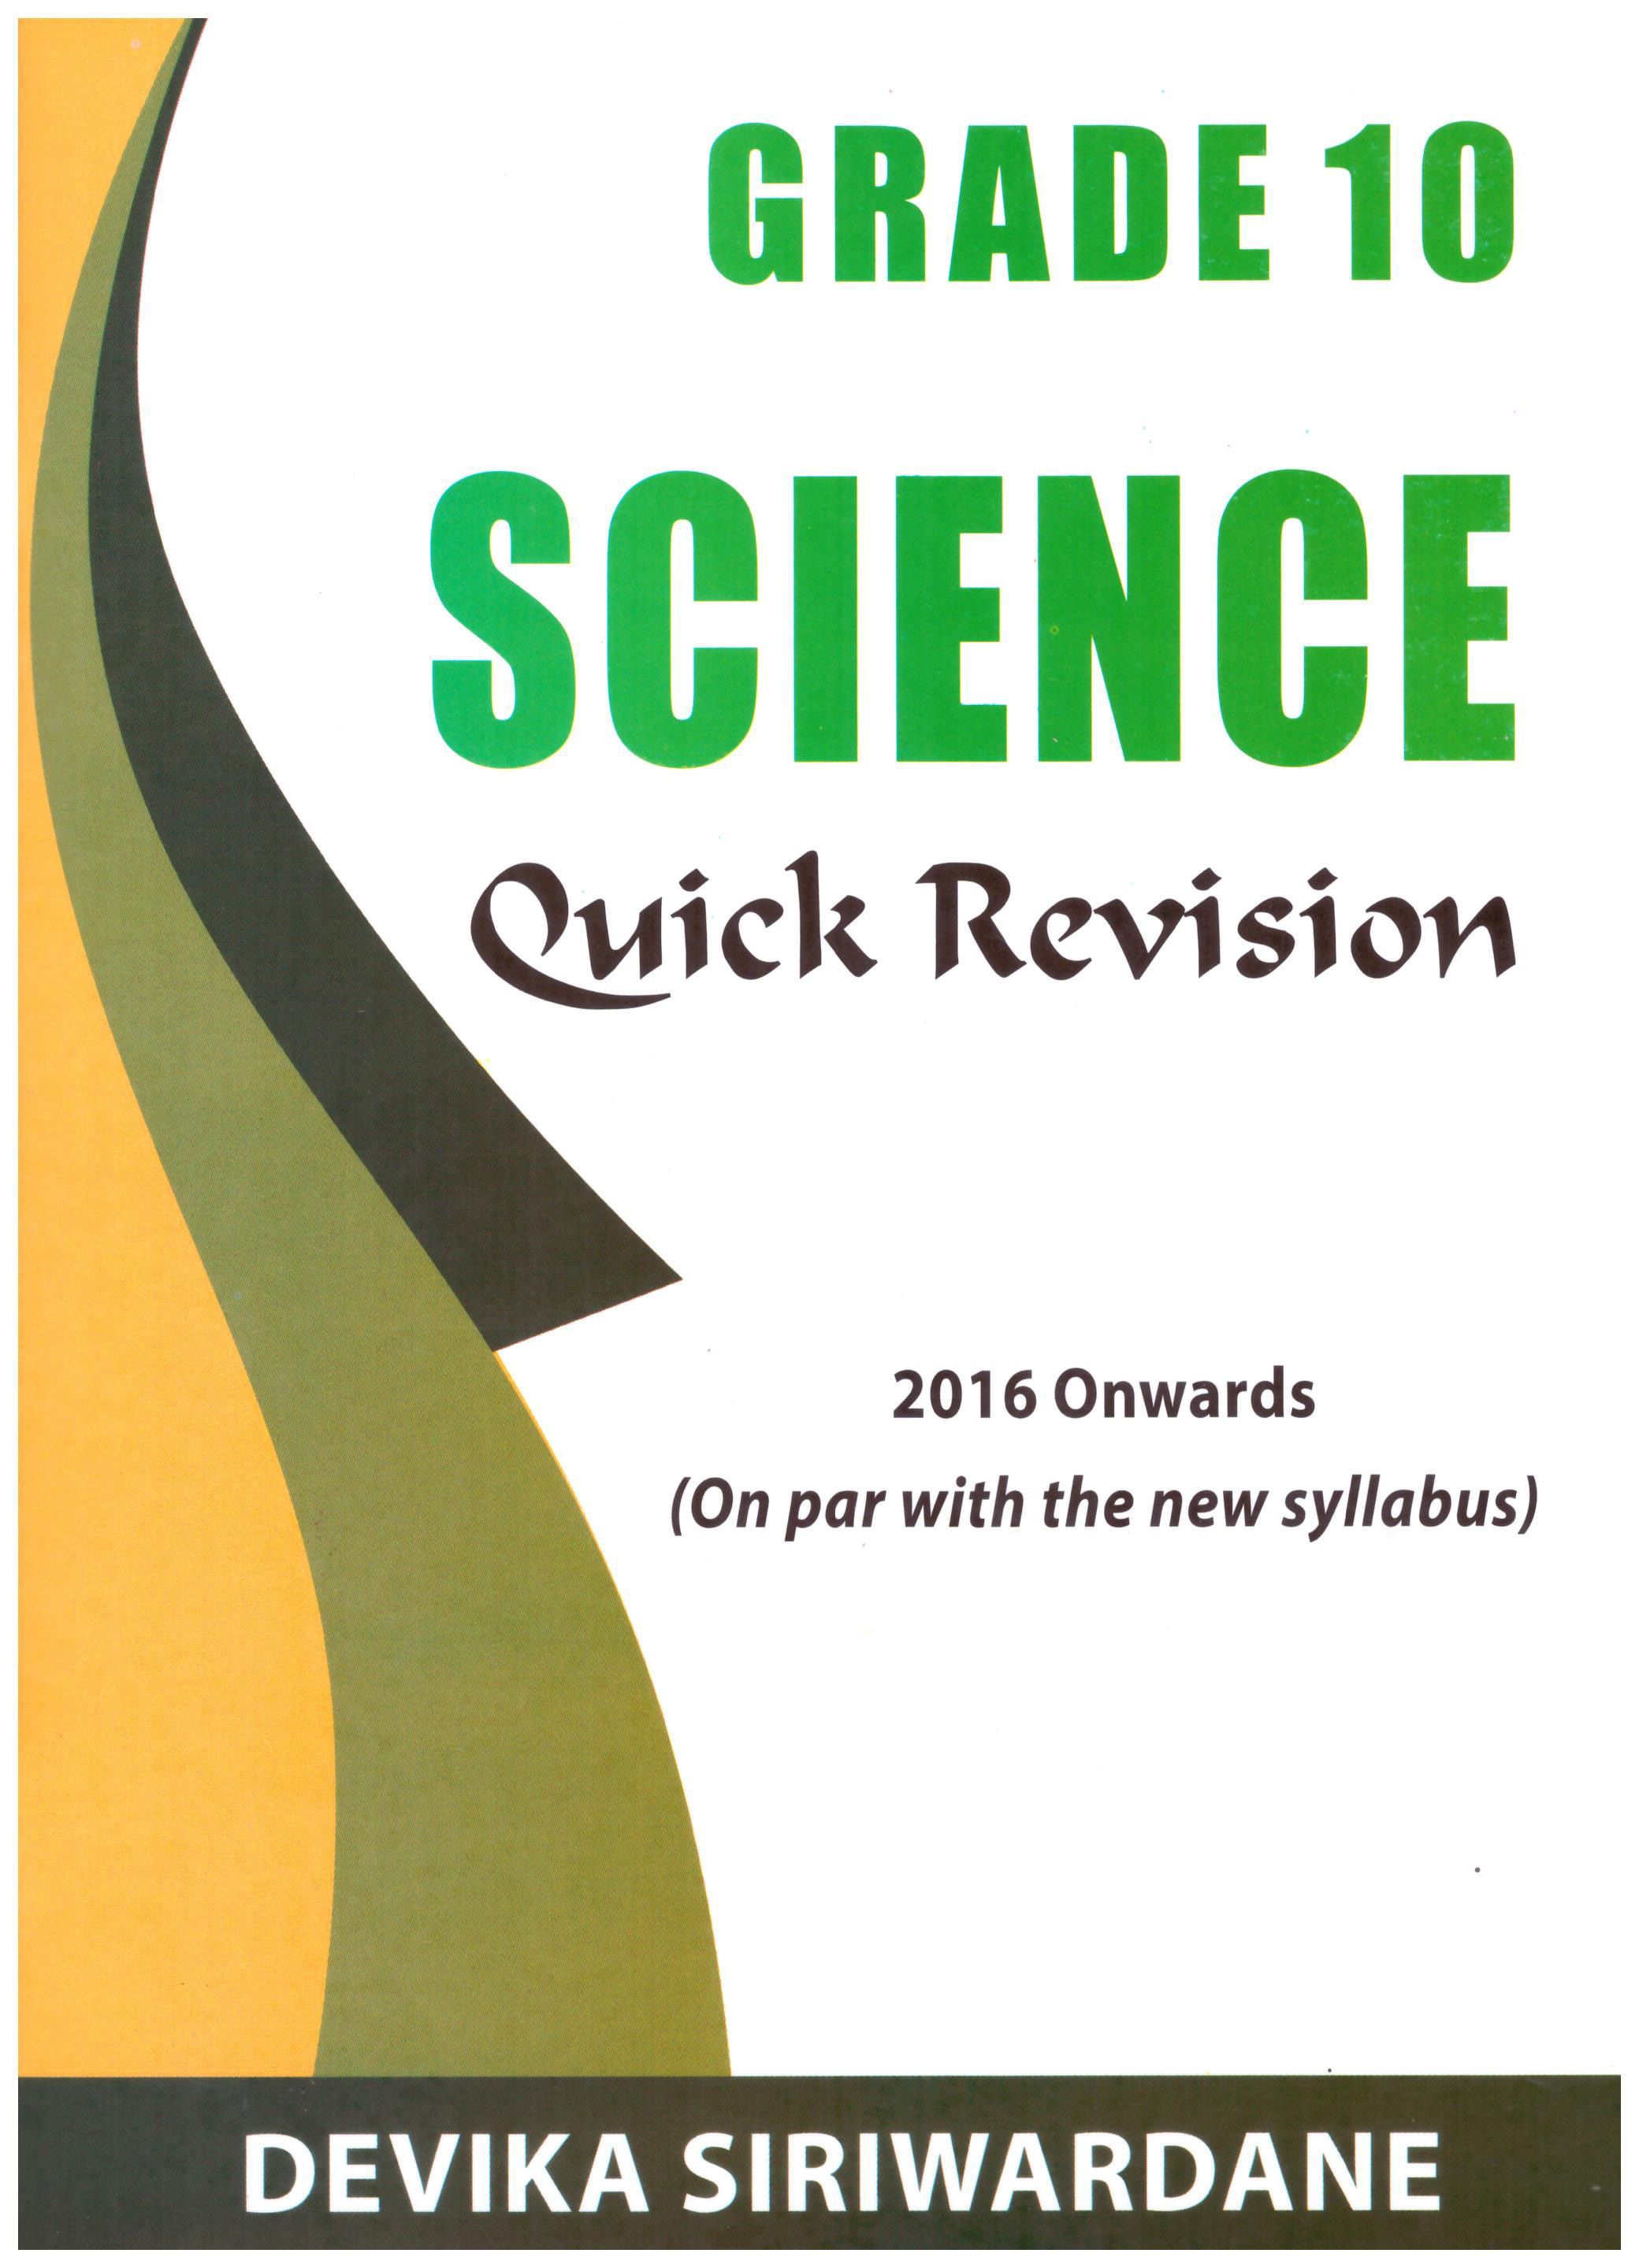 Grade 10 Science Quick Revision (2016 Onwards)